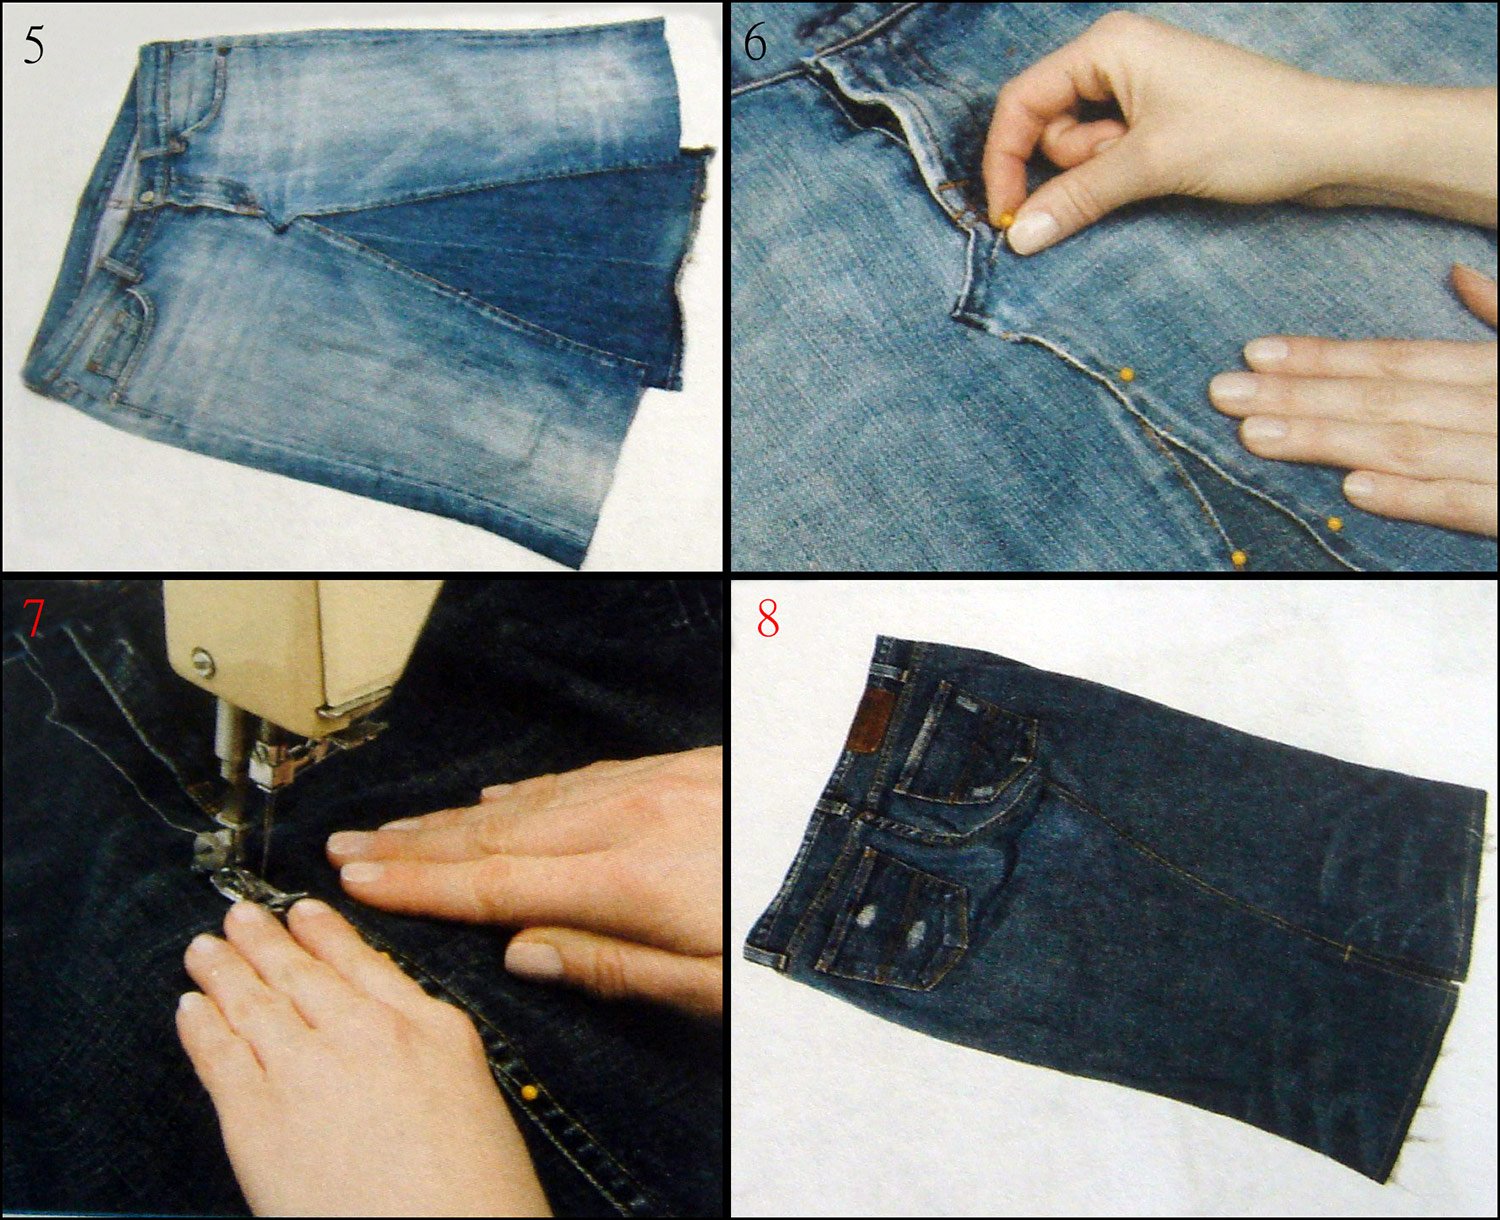 Как переделать джинсы